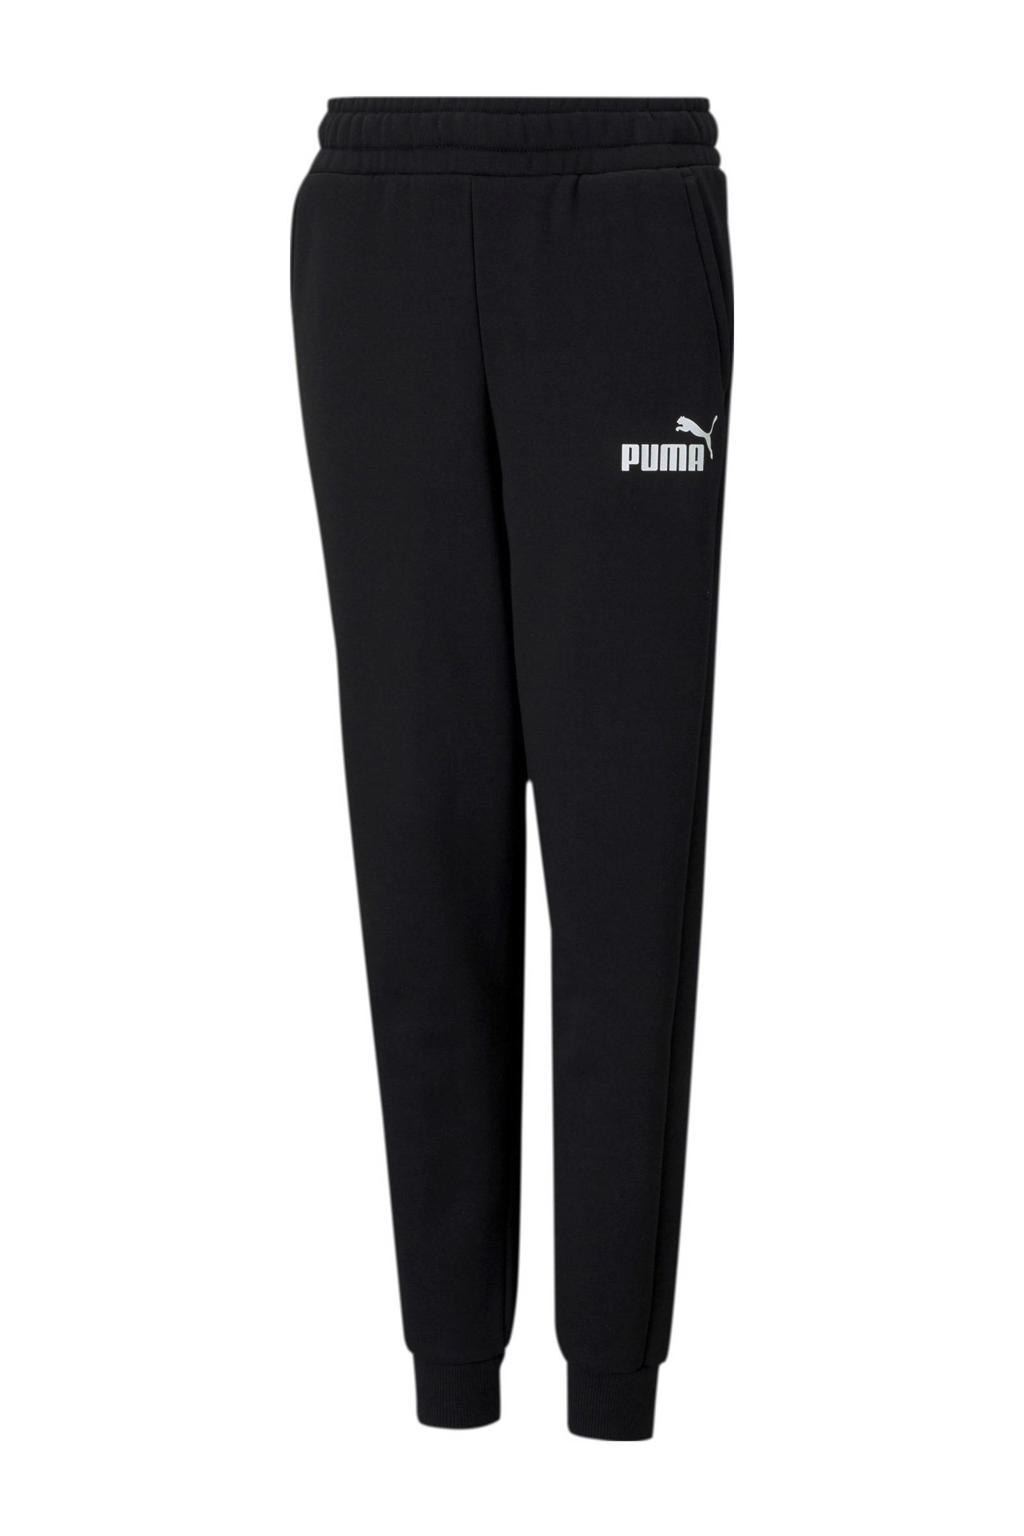 Zwarte jongens Puma regular fit joggingbroek van katoen met elastische tailleband met koord en logo dessin